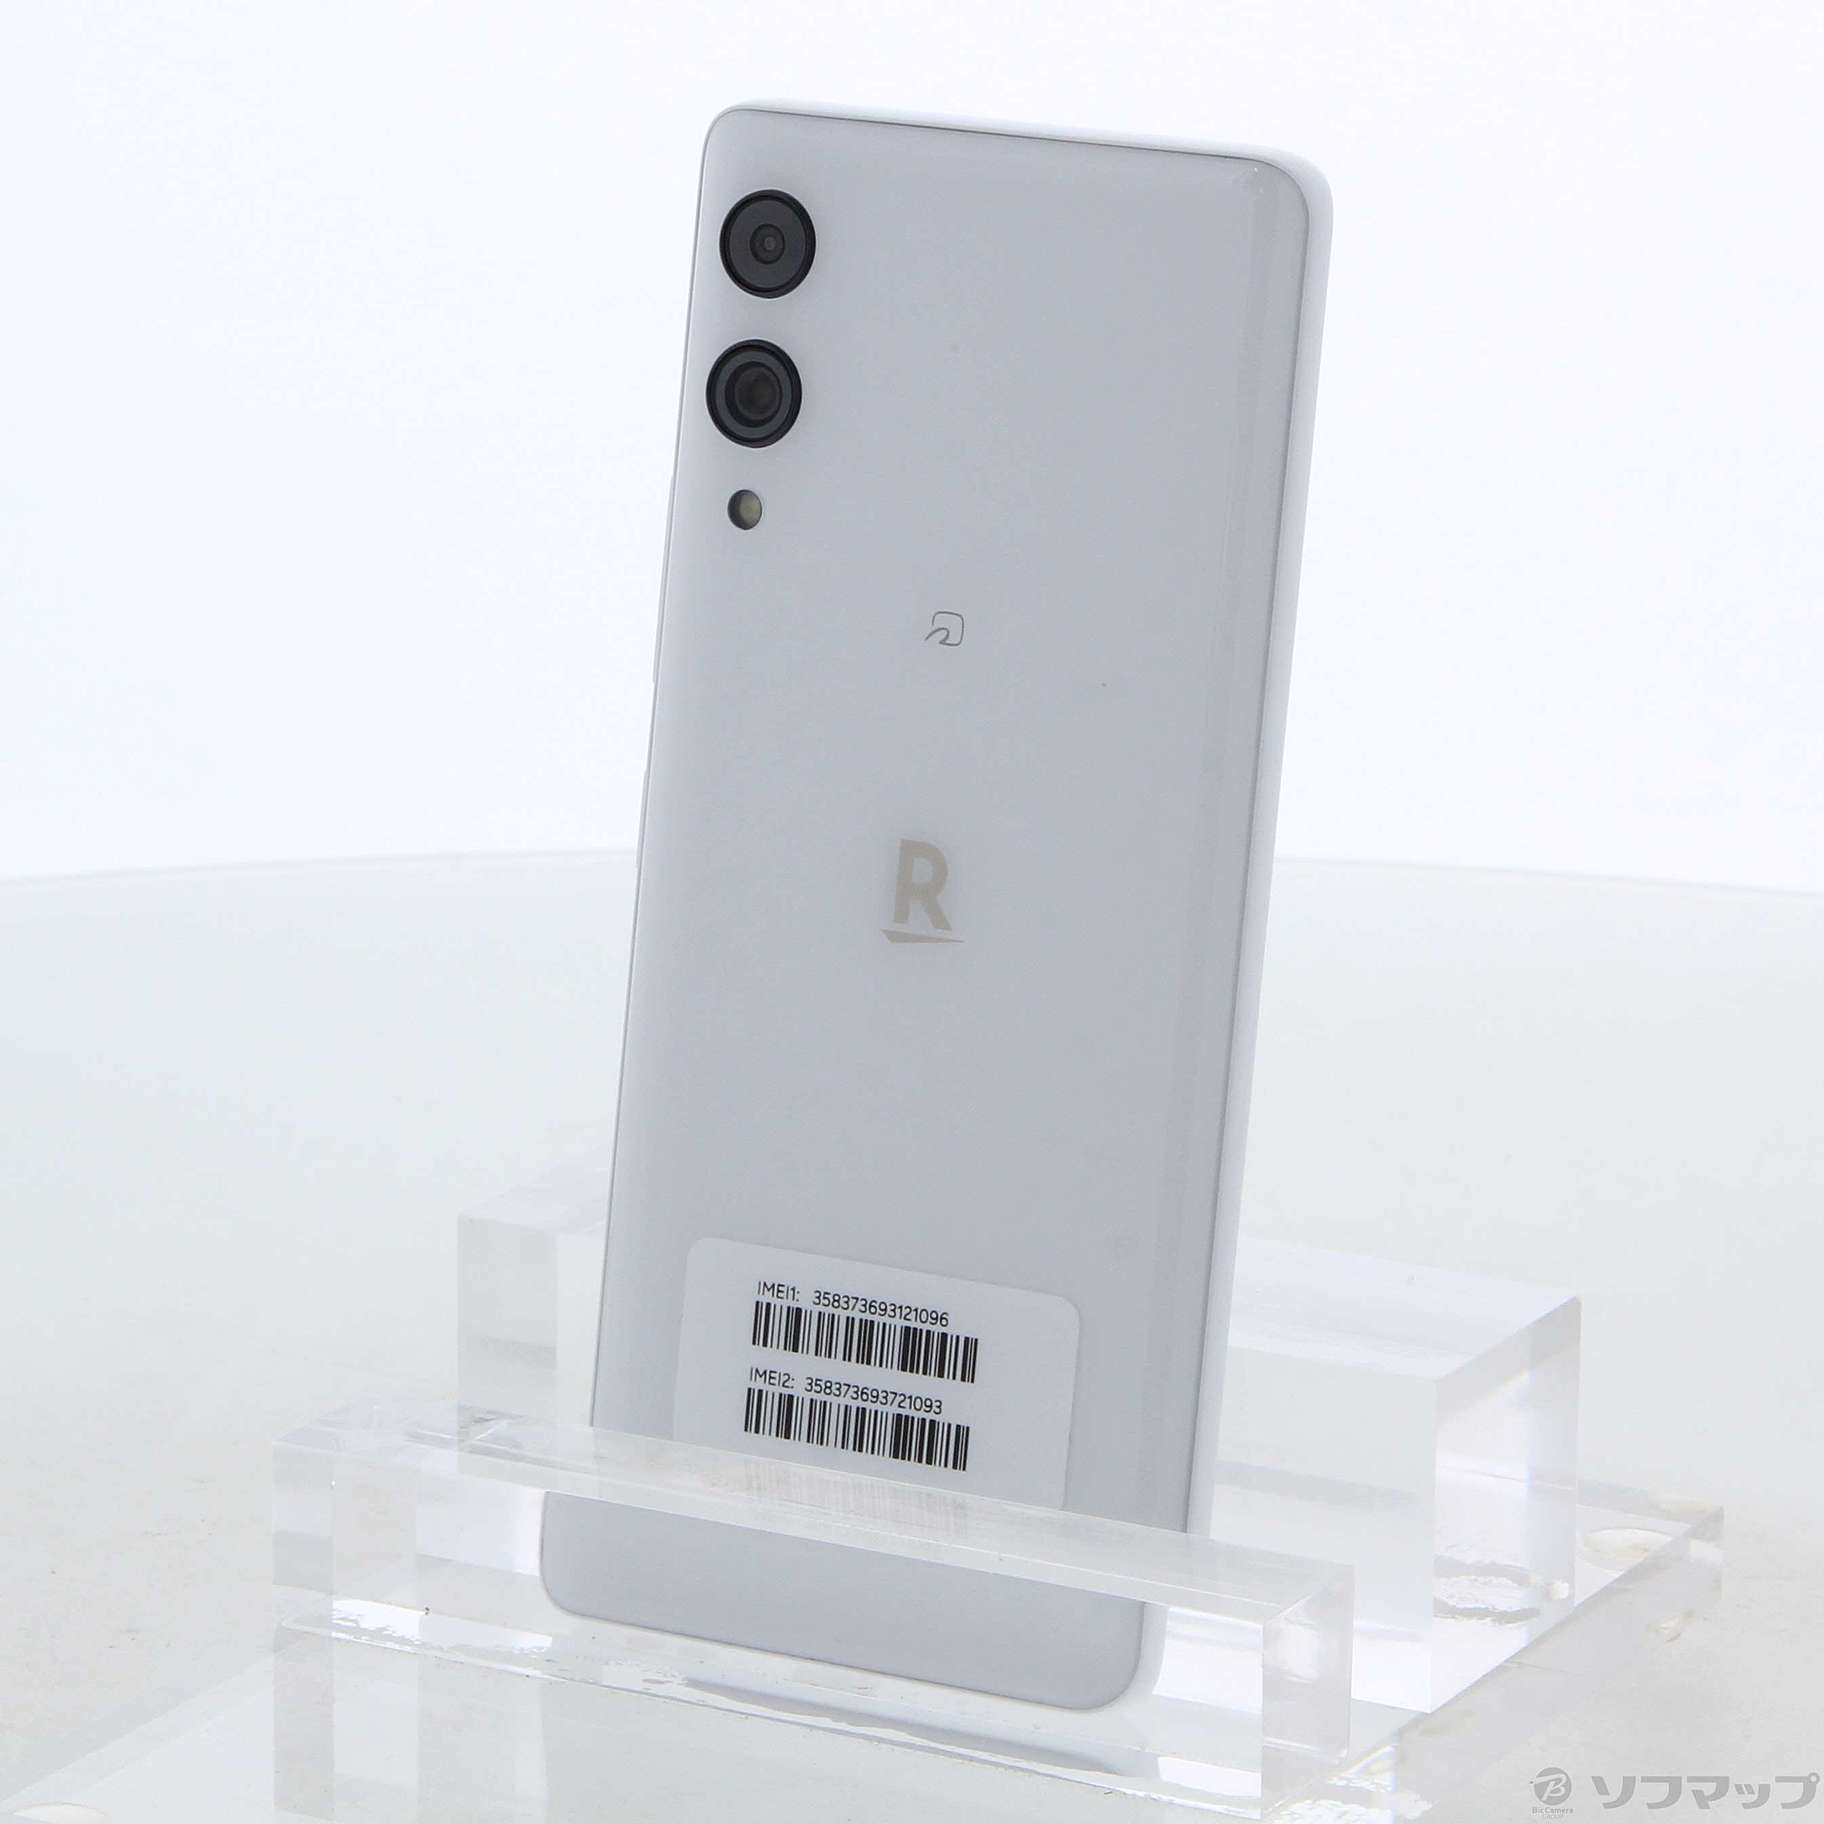 Rakuten Hand 5G ホワイト 128 GB その他 - スマートフォン本体